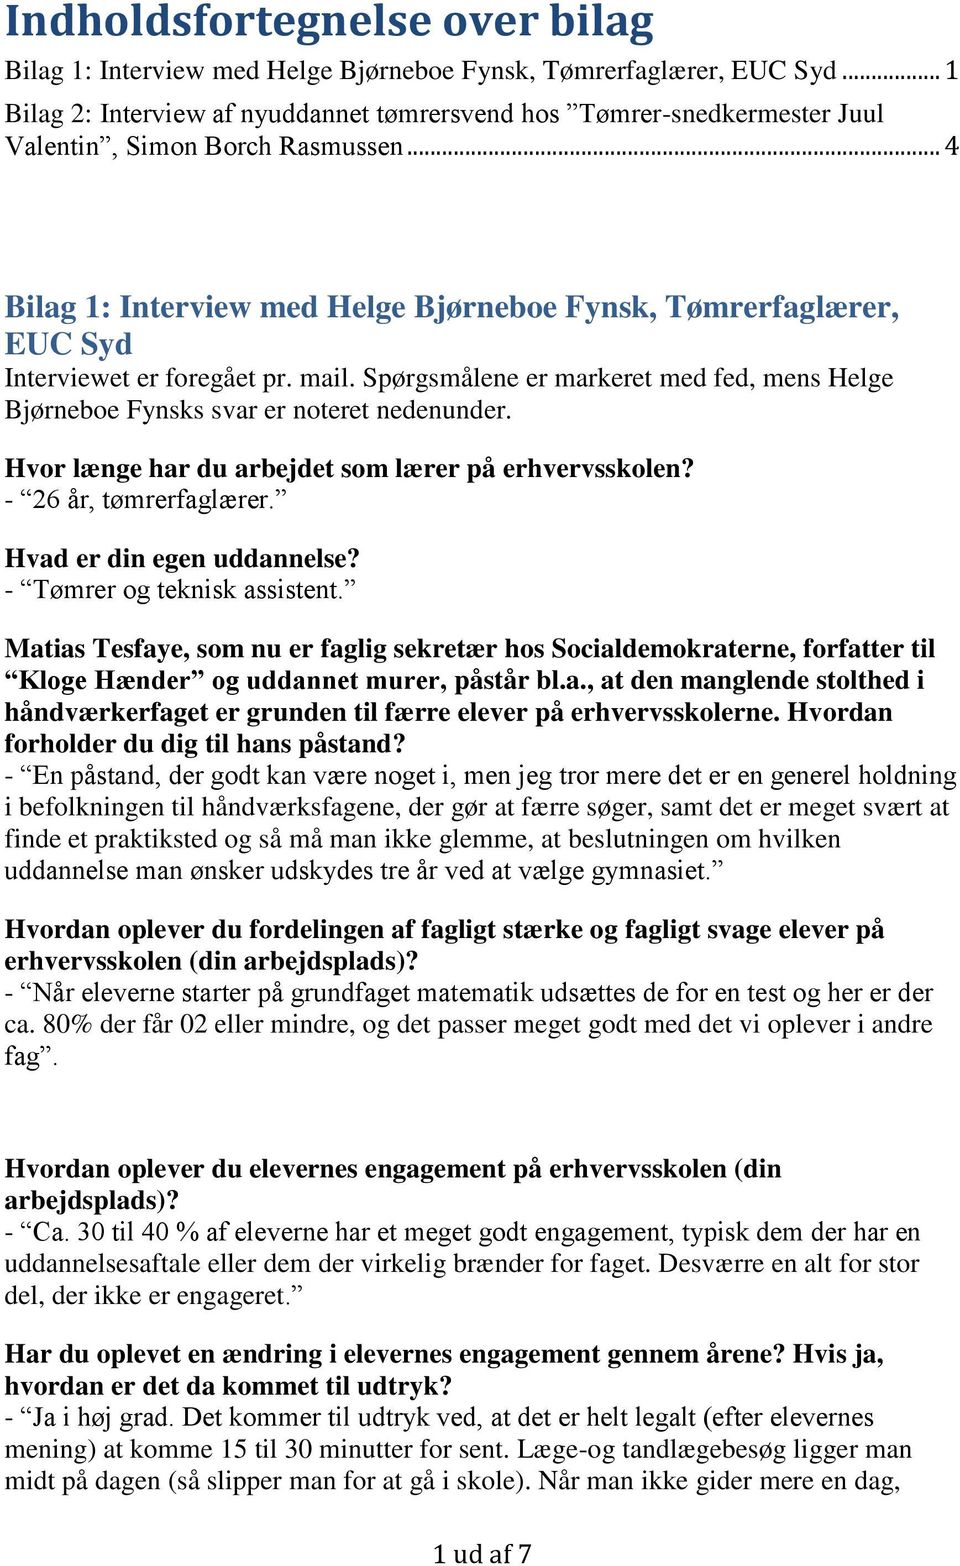 .. 4 Bilag 1: Interview med Helge Bjørneboe Fynsk, Tømrerfaglærer, EUC Syd Interviewet er foregået pr. mail. Spørgsmålene er markeret med fed, mens Helge Bjørneboe Fynsks svar er noteret nedenunder.